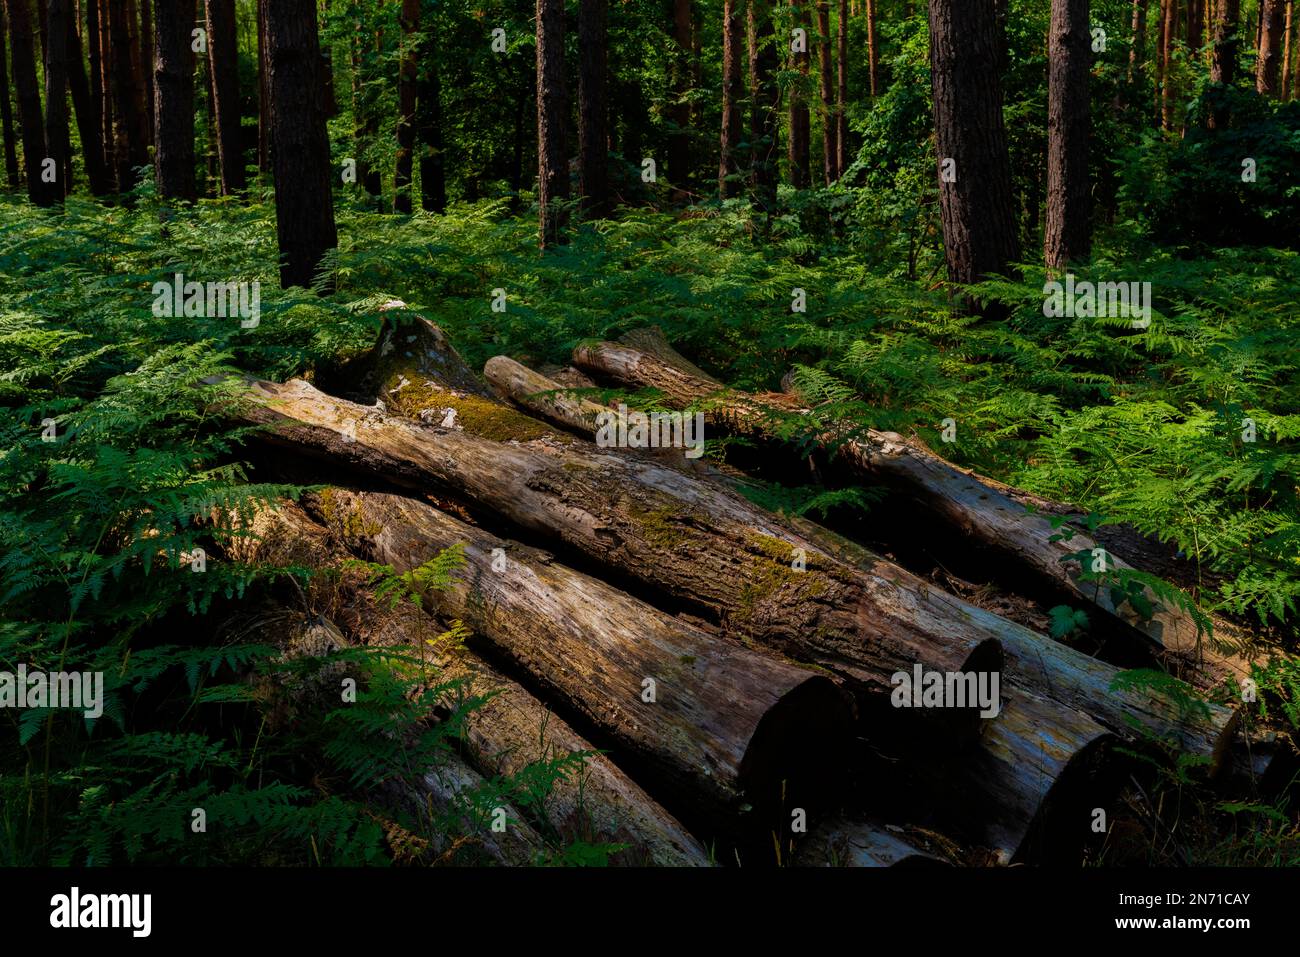 Les vieux troncs d'arbres se trouvent dans une forêt, toute la forêt est surcultivée avec de la fougère Banque D'Images